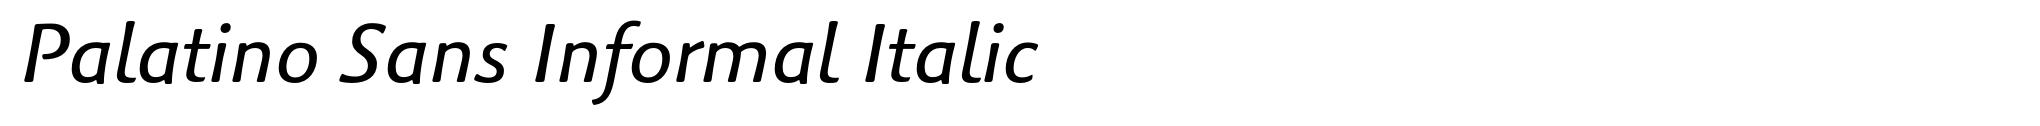 Palatino Sans Informal Italic image